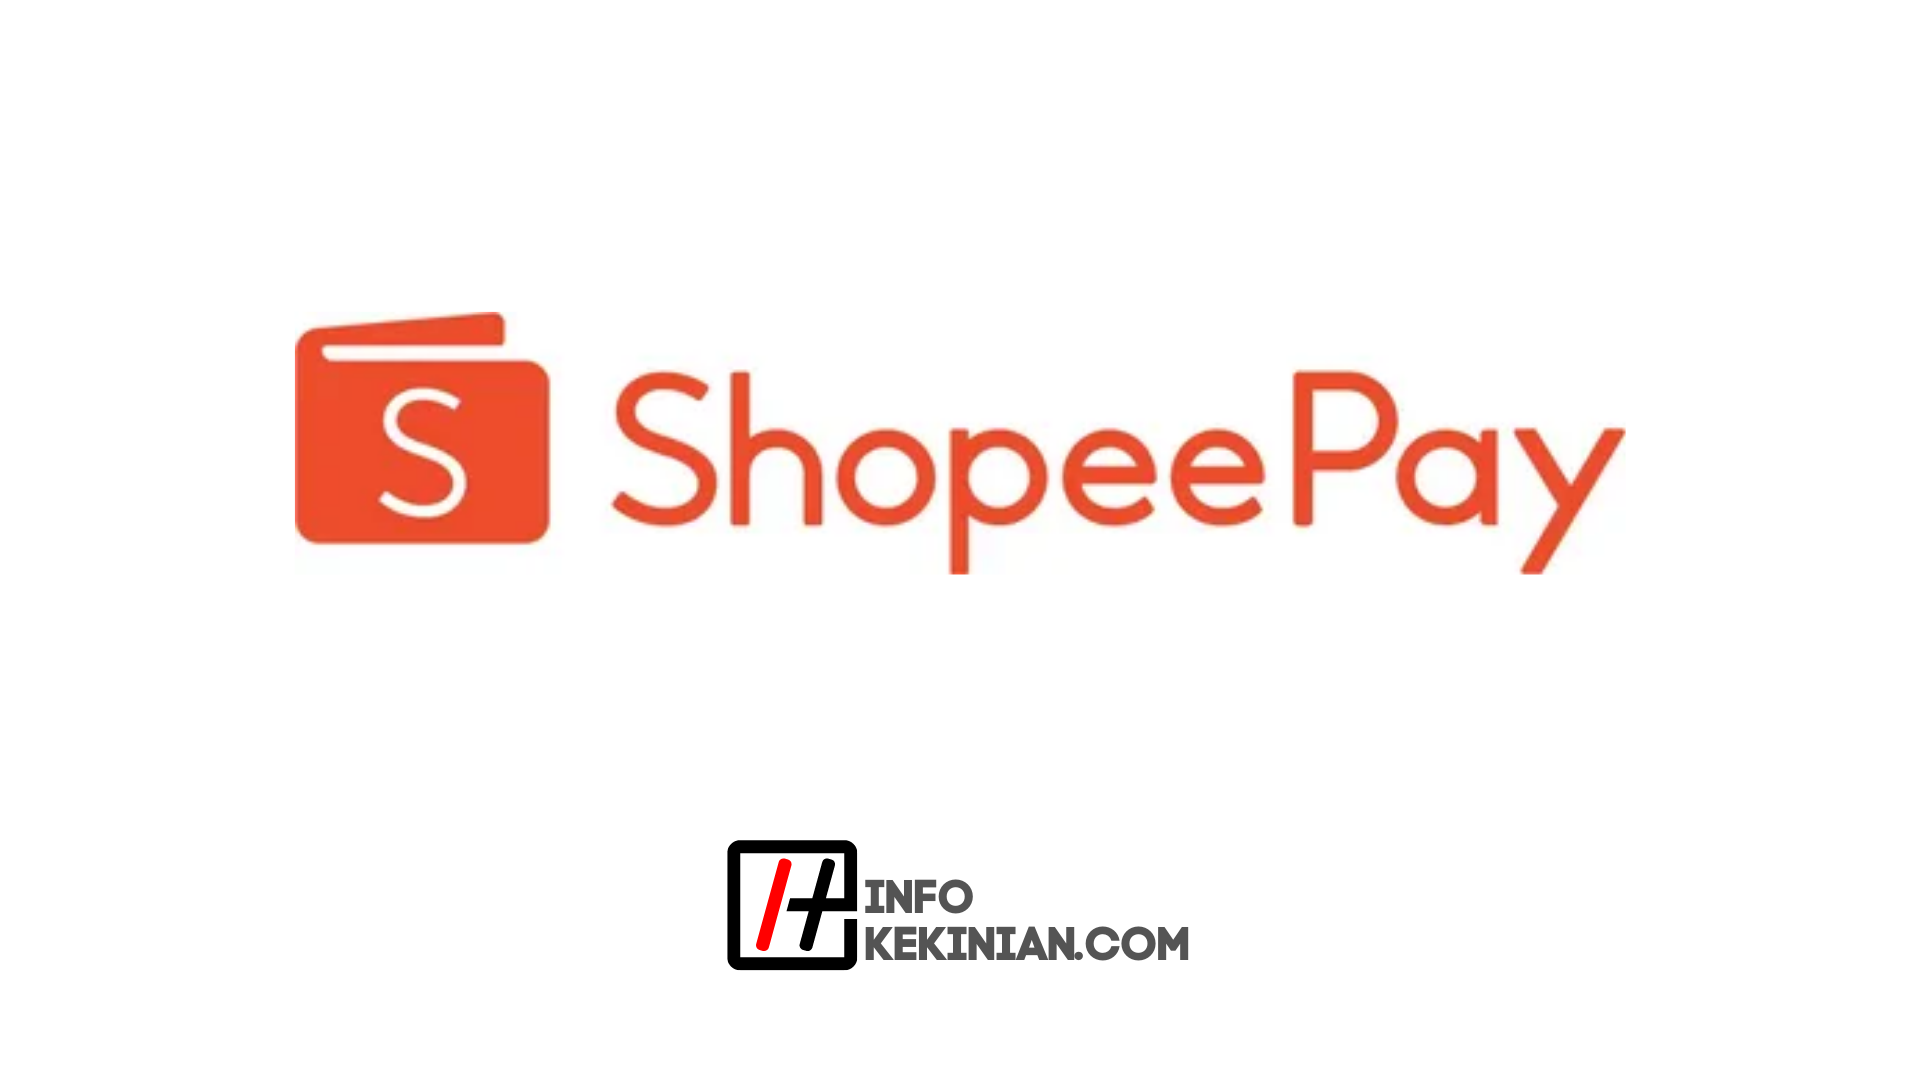 Eine praktische und unkomplizierte Möglichkeit, ShopeePay aufzuladen